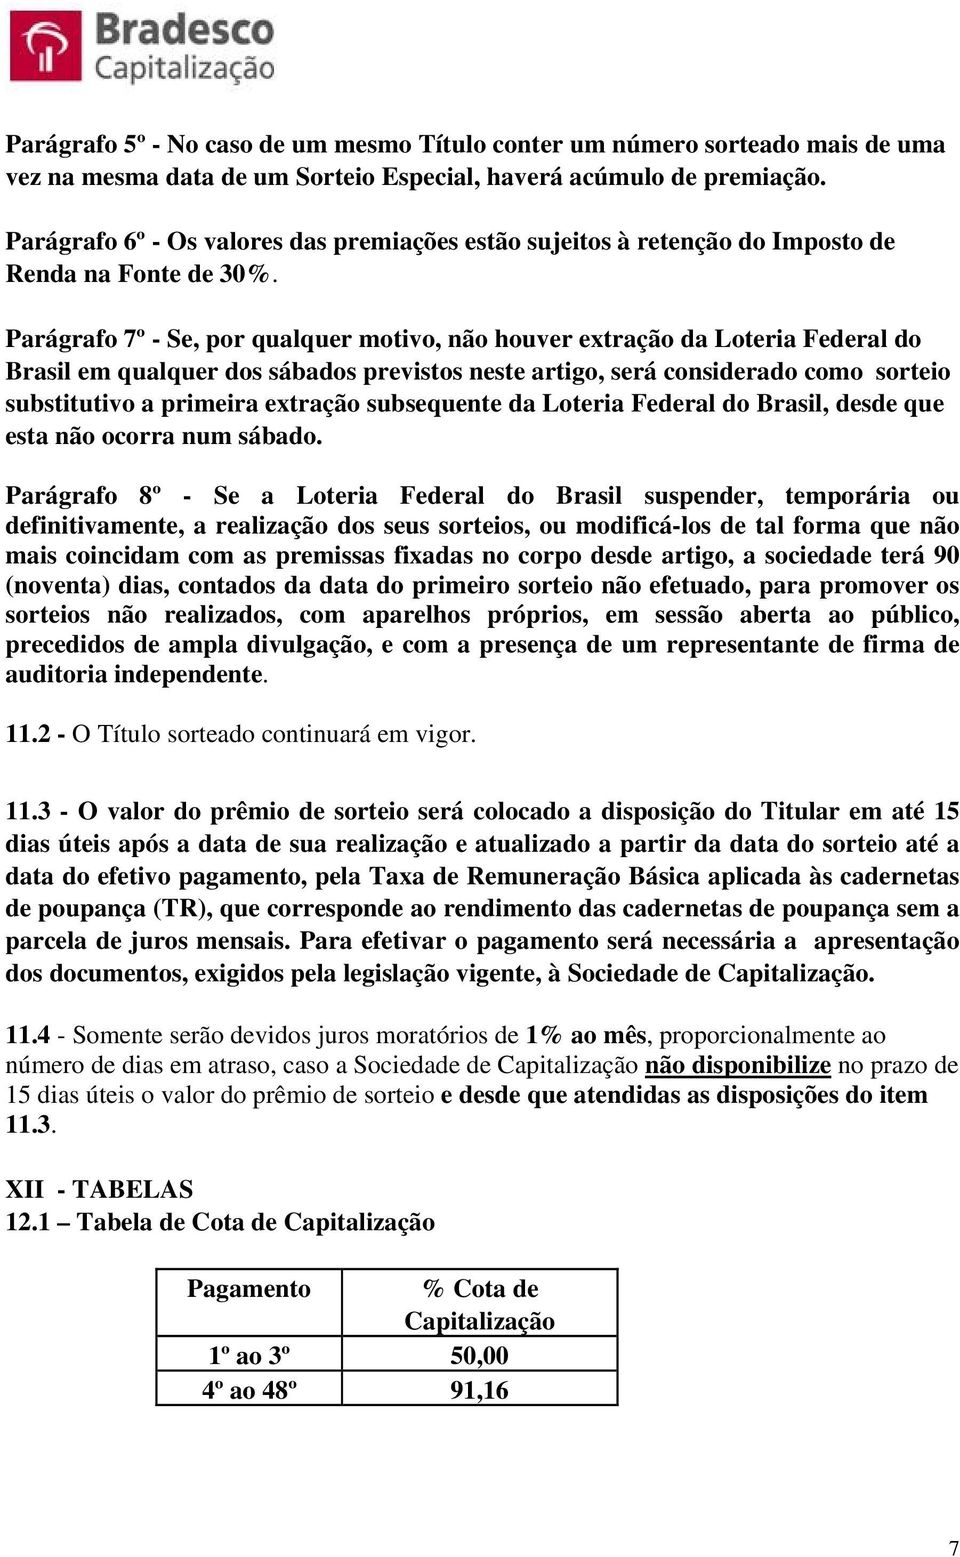 Parágrafo 7º - Se, por qualquer motivo, não houver extração da Loteria Federal do Brasil em qualquer dos sábados previstos neste artigo, será considerado como sorteio substitutivo a primeira extração